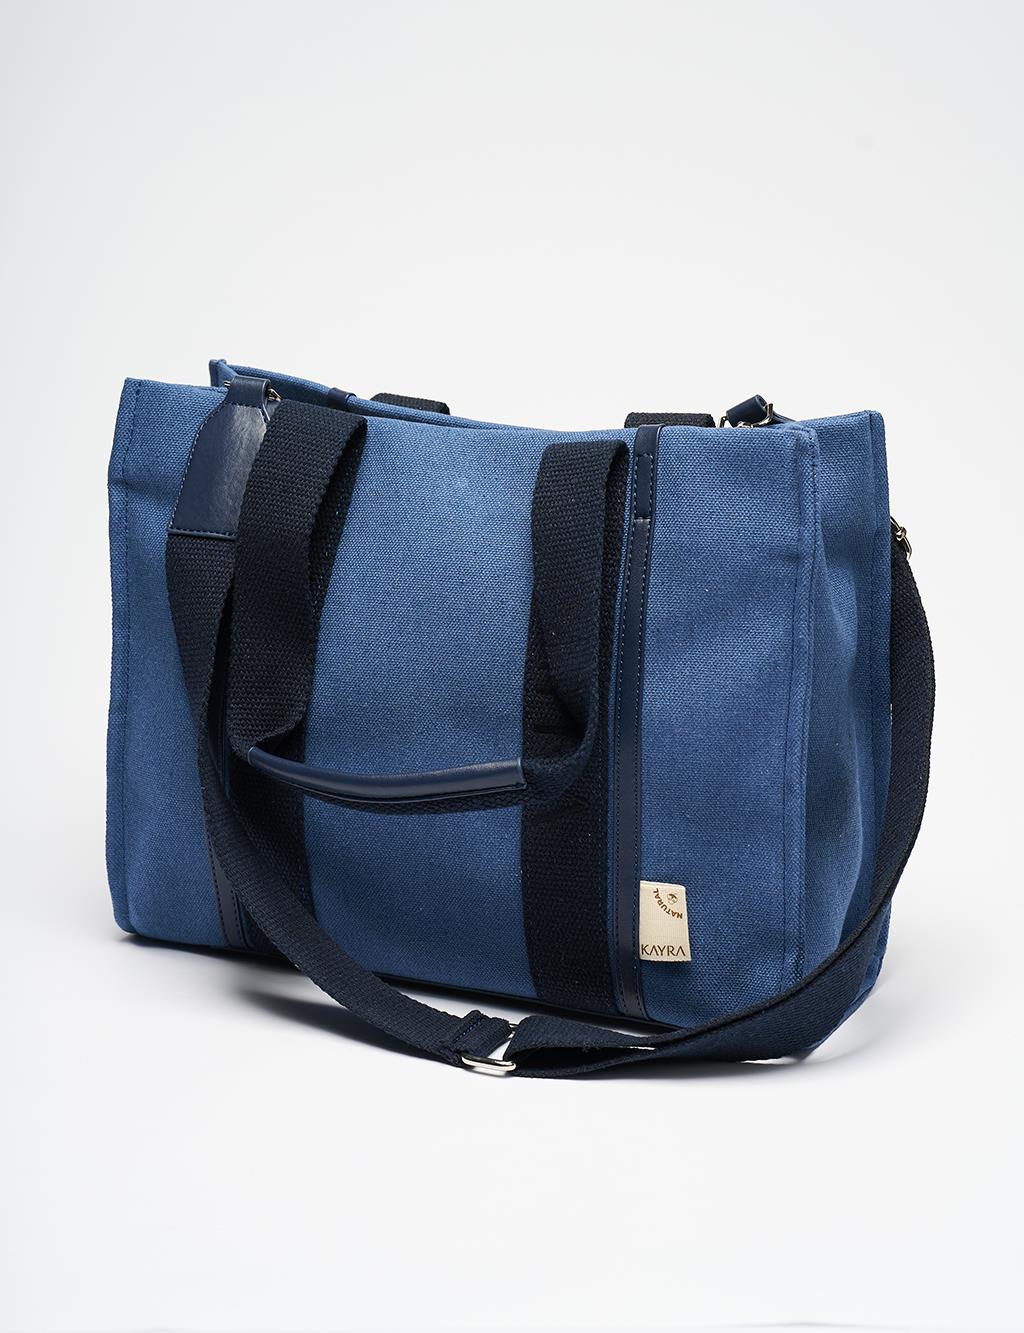 Canvas Tote Bag with Woven Strap Indigo-Navy Blue